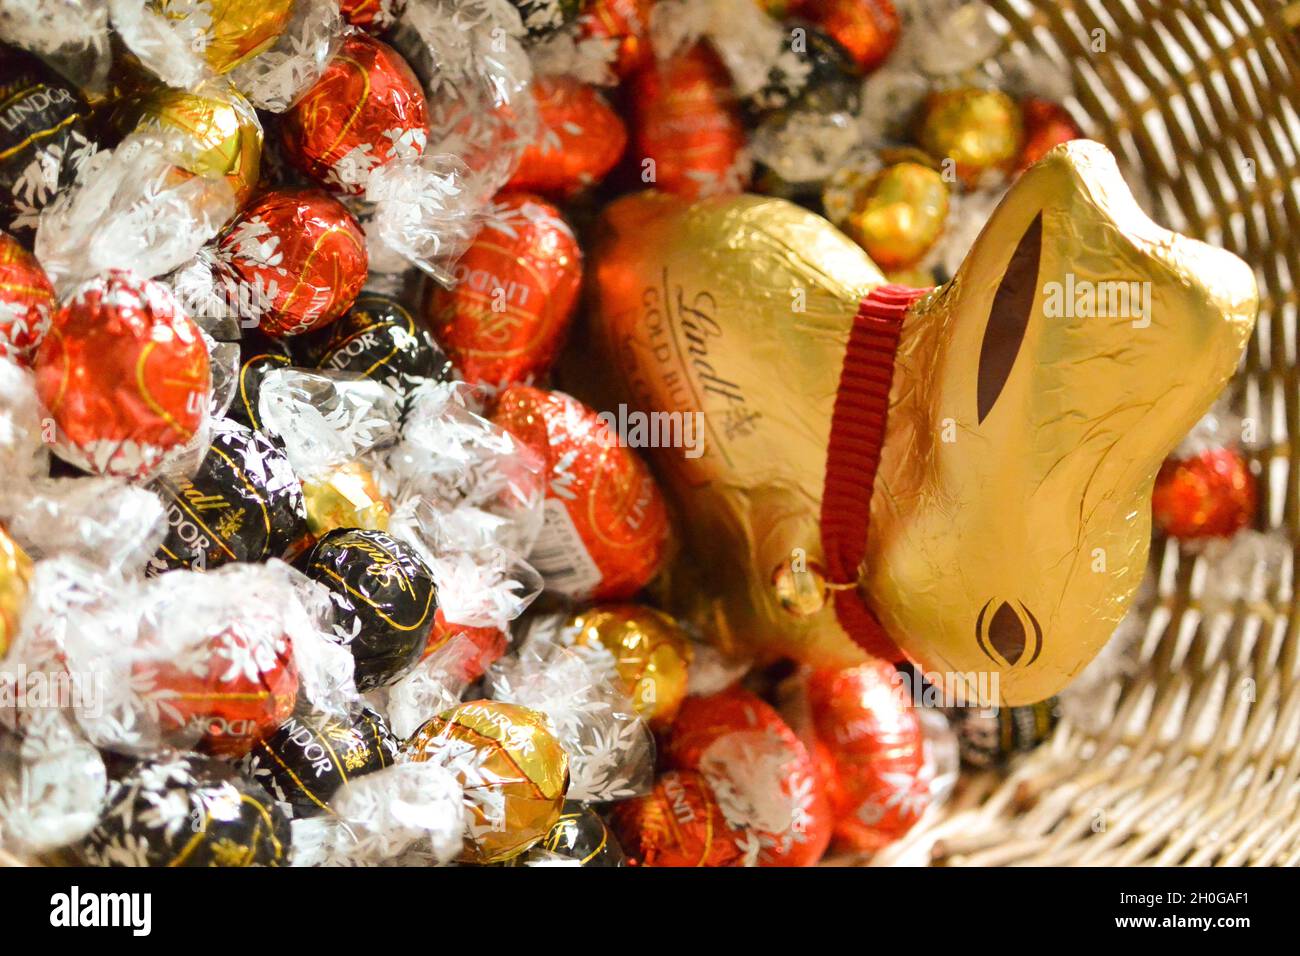 El icónico conejito de chocolate Lindt envuelto en papel de aluminio dorado con un distintivo cuello y campana rojos, en una cesta de mimbre de Pascua con huevos y chocolates Lindor Foto de stock